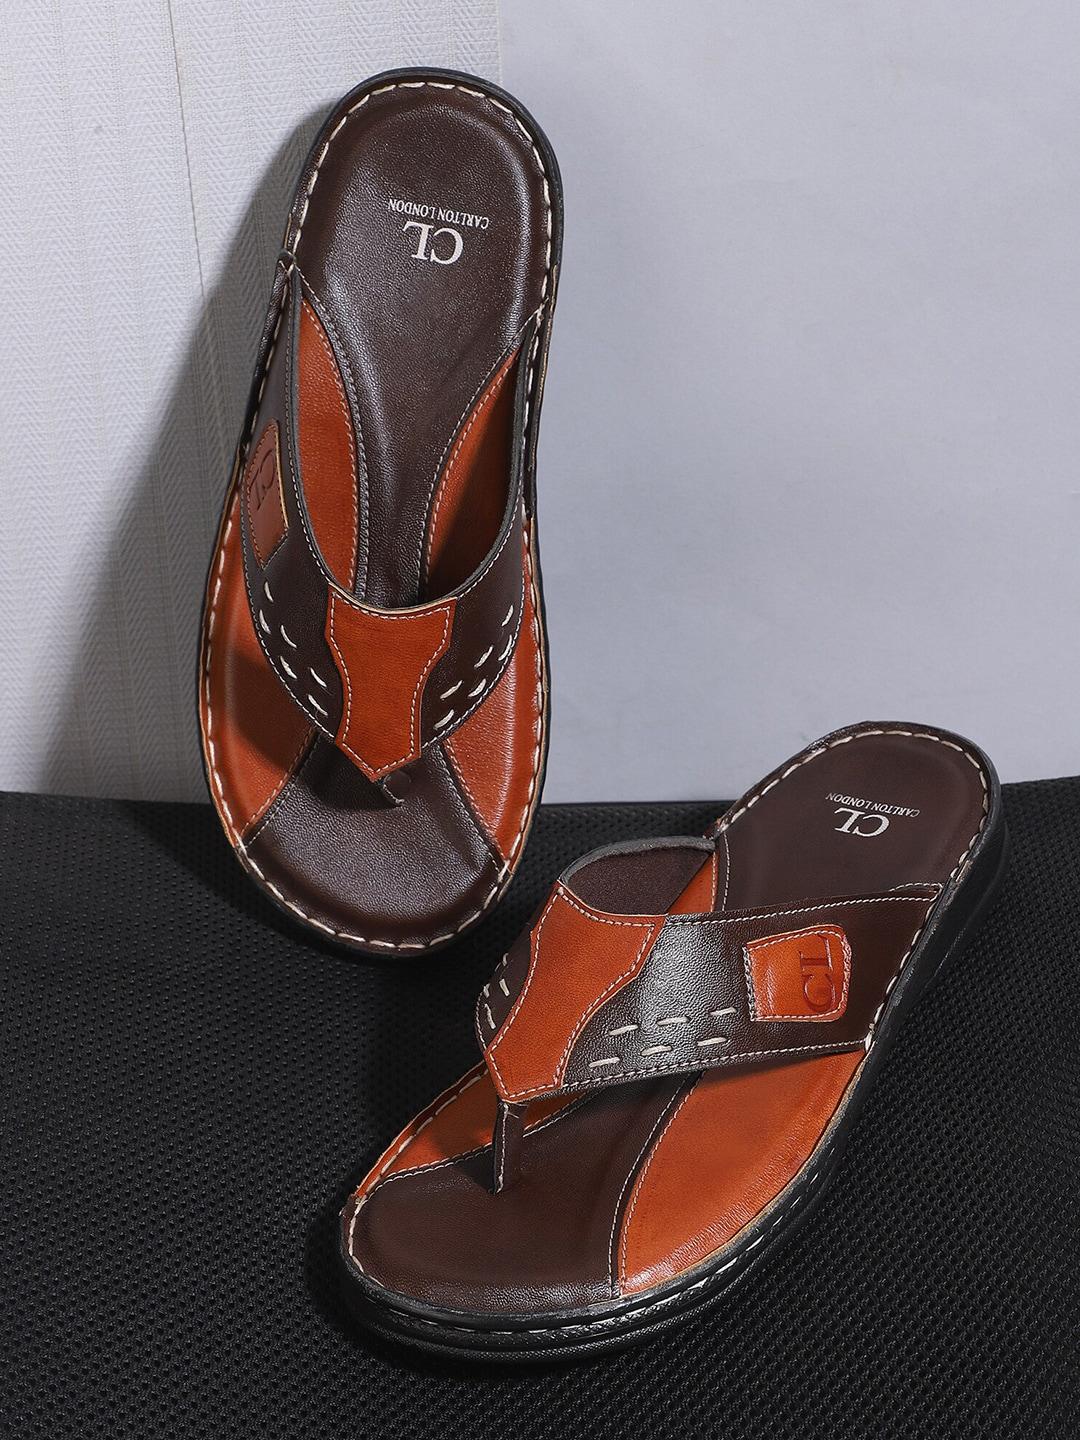 carlton london men brown & tan comfort sandals